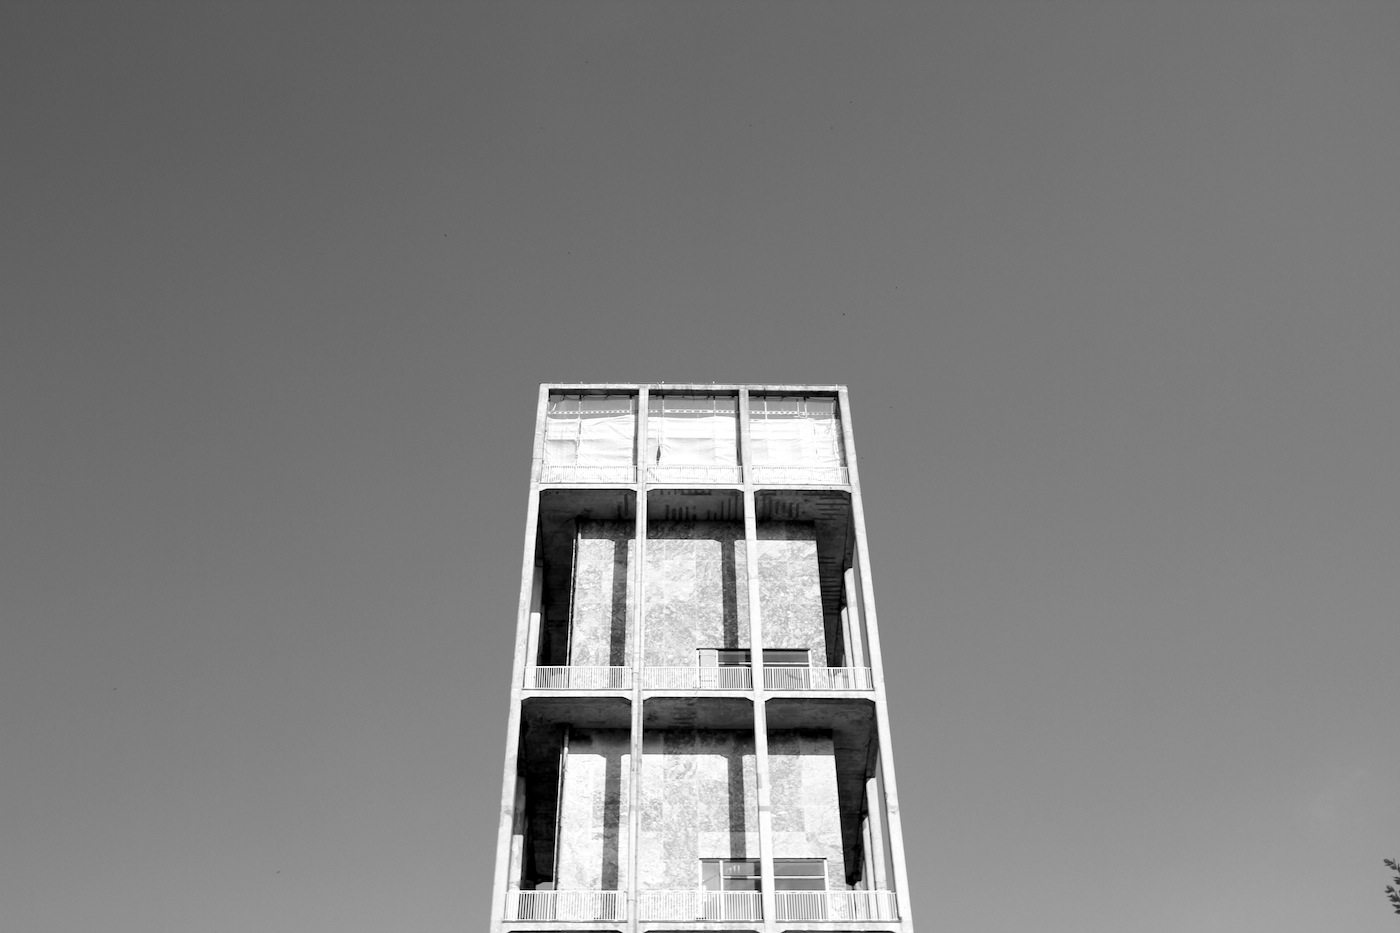 Rathaus Aarhus. Entworfen von Arne Jacobsen und Erik Møller, die auf diese Weise den skandinavischen Funktionalismus mit geprägt haben. Der Turm ist 60 Meter hoch. Das Rathaus wurde 1941 fertiggestellt und 1995 als Denkmal deklariert.